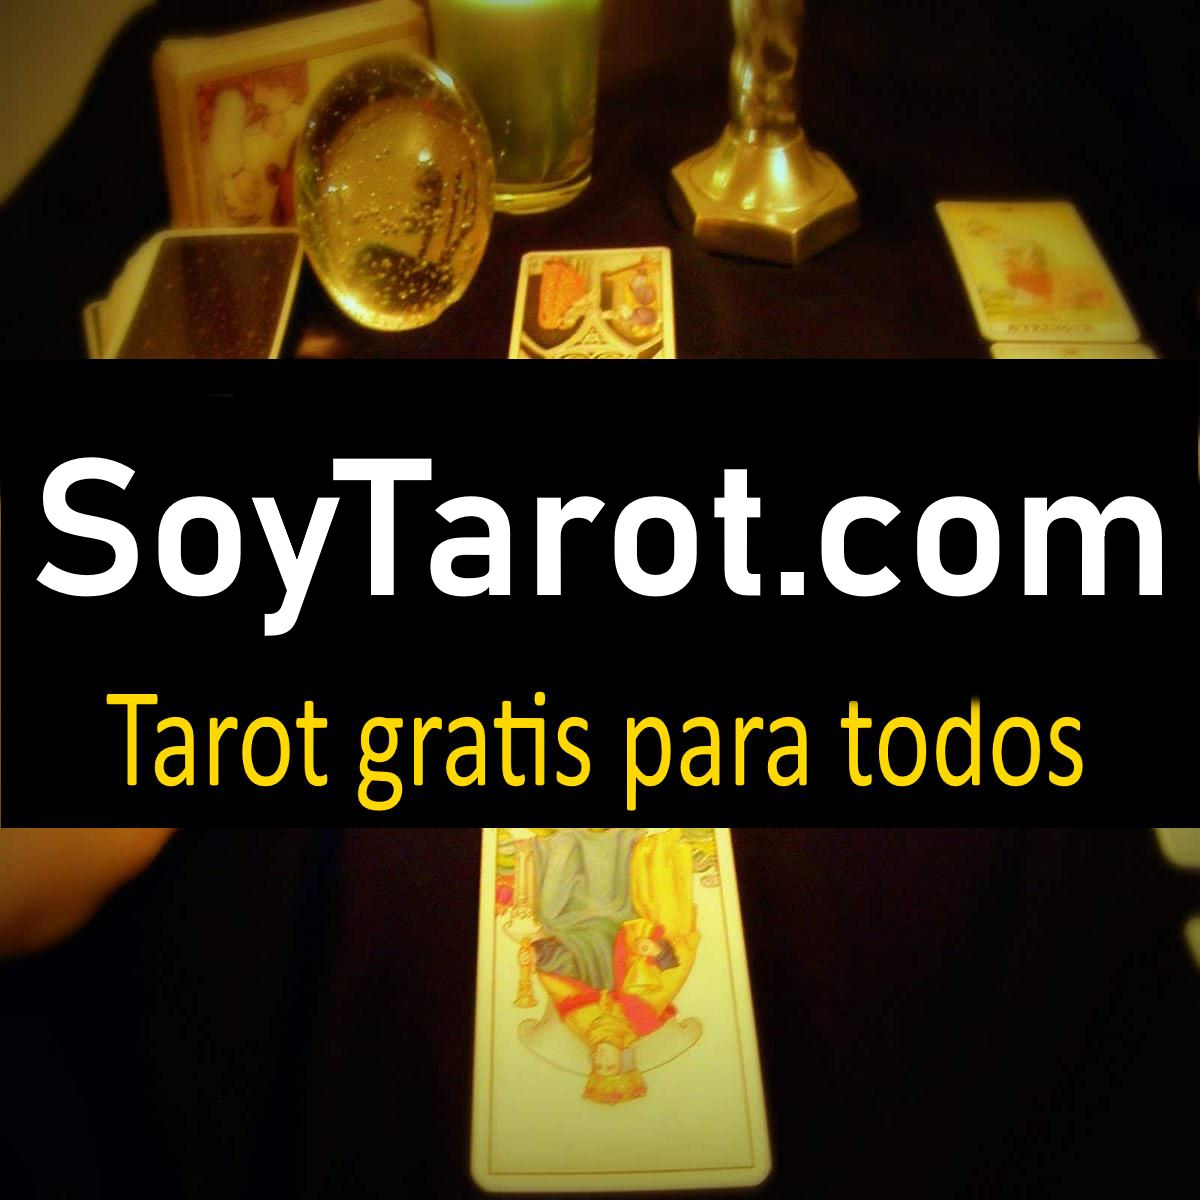 (c) Soytarot.com